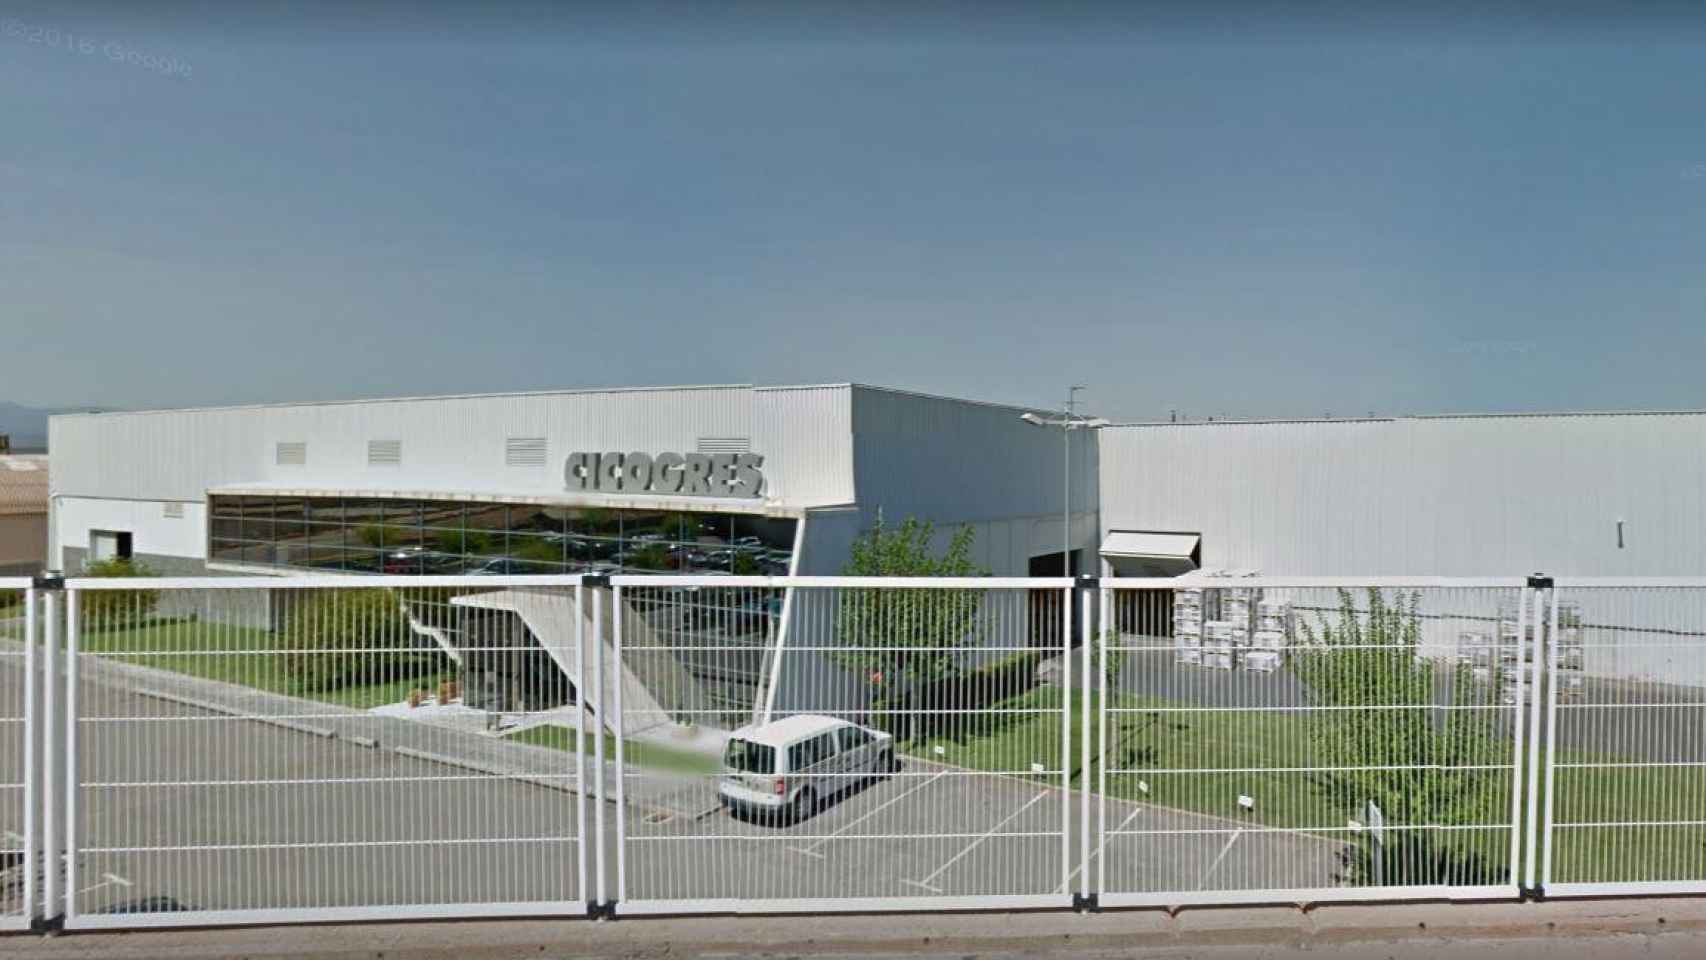 Instalaciones industriales de Cicogres en Vilafamés, dedicada al sector cerámico / CG